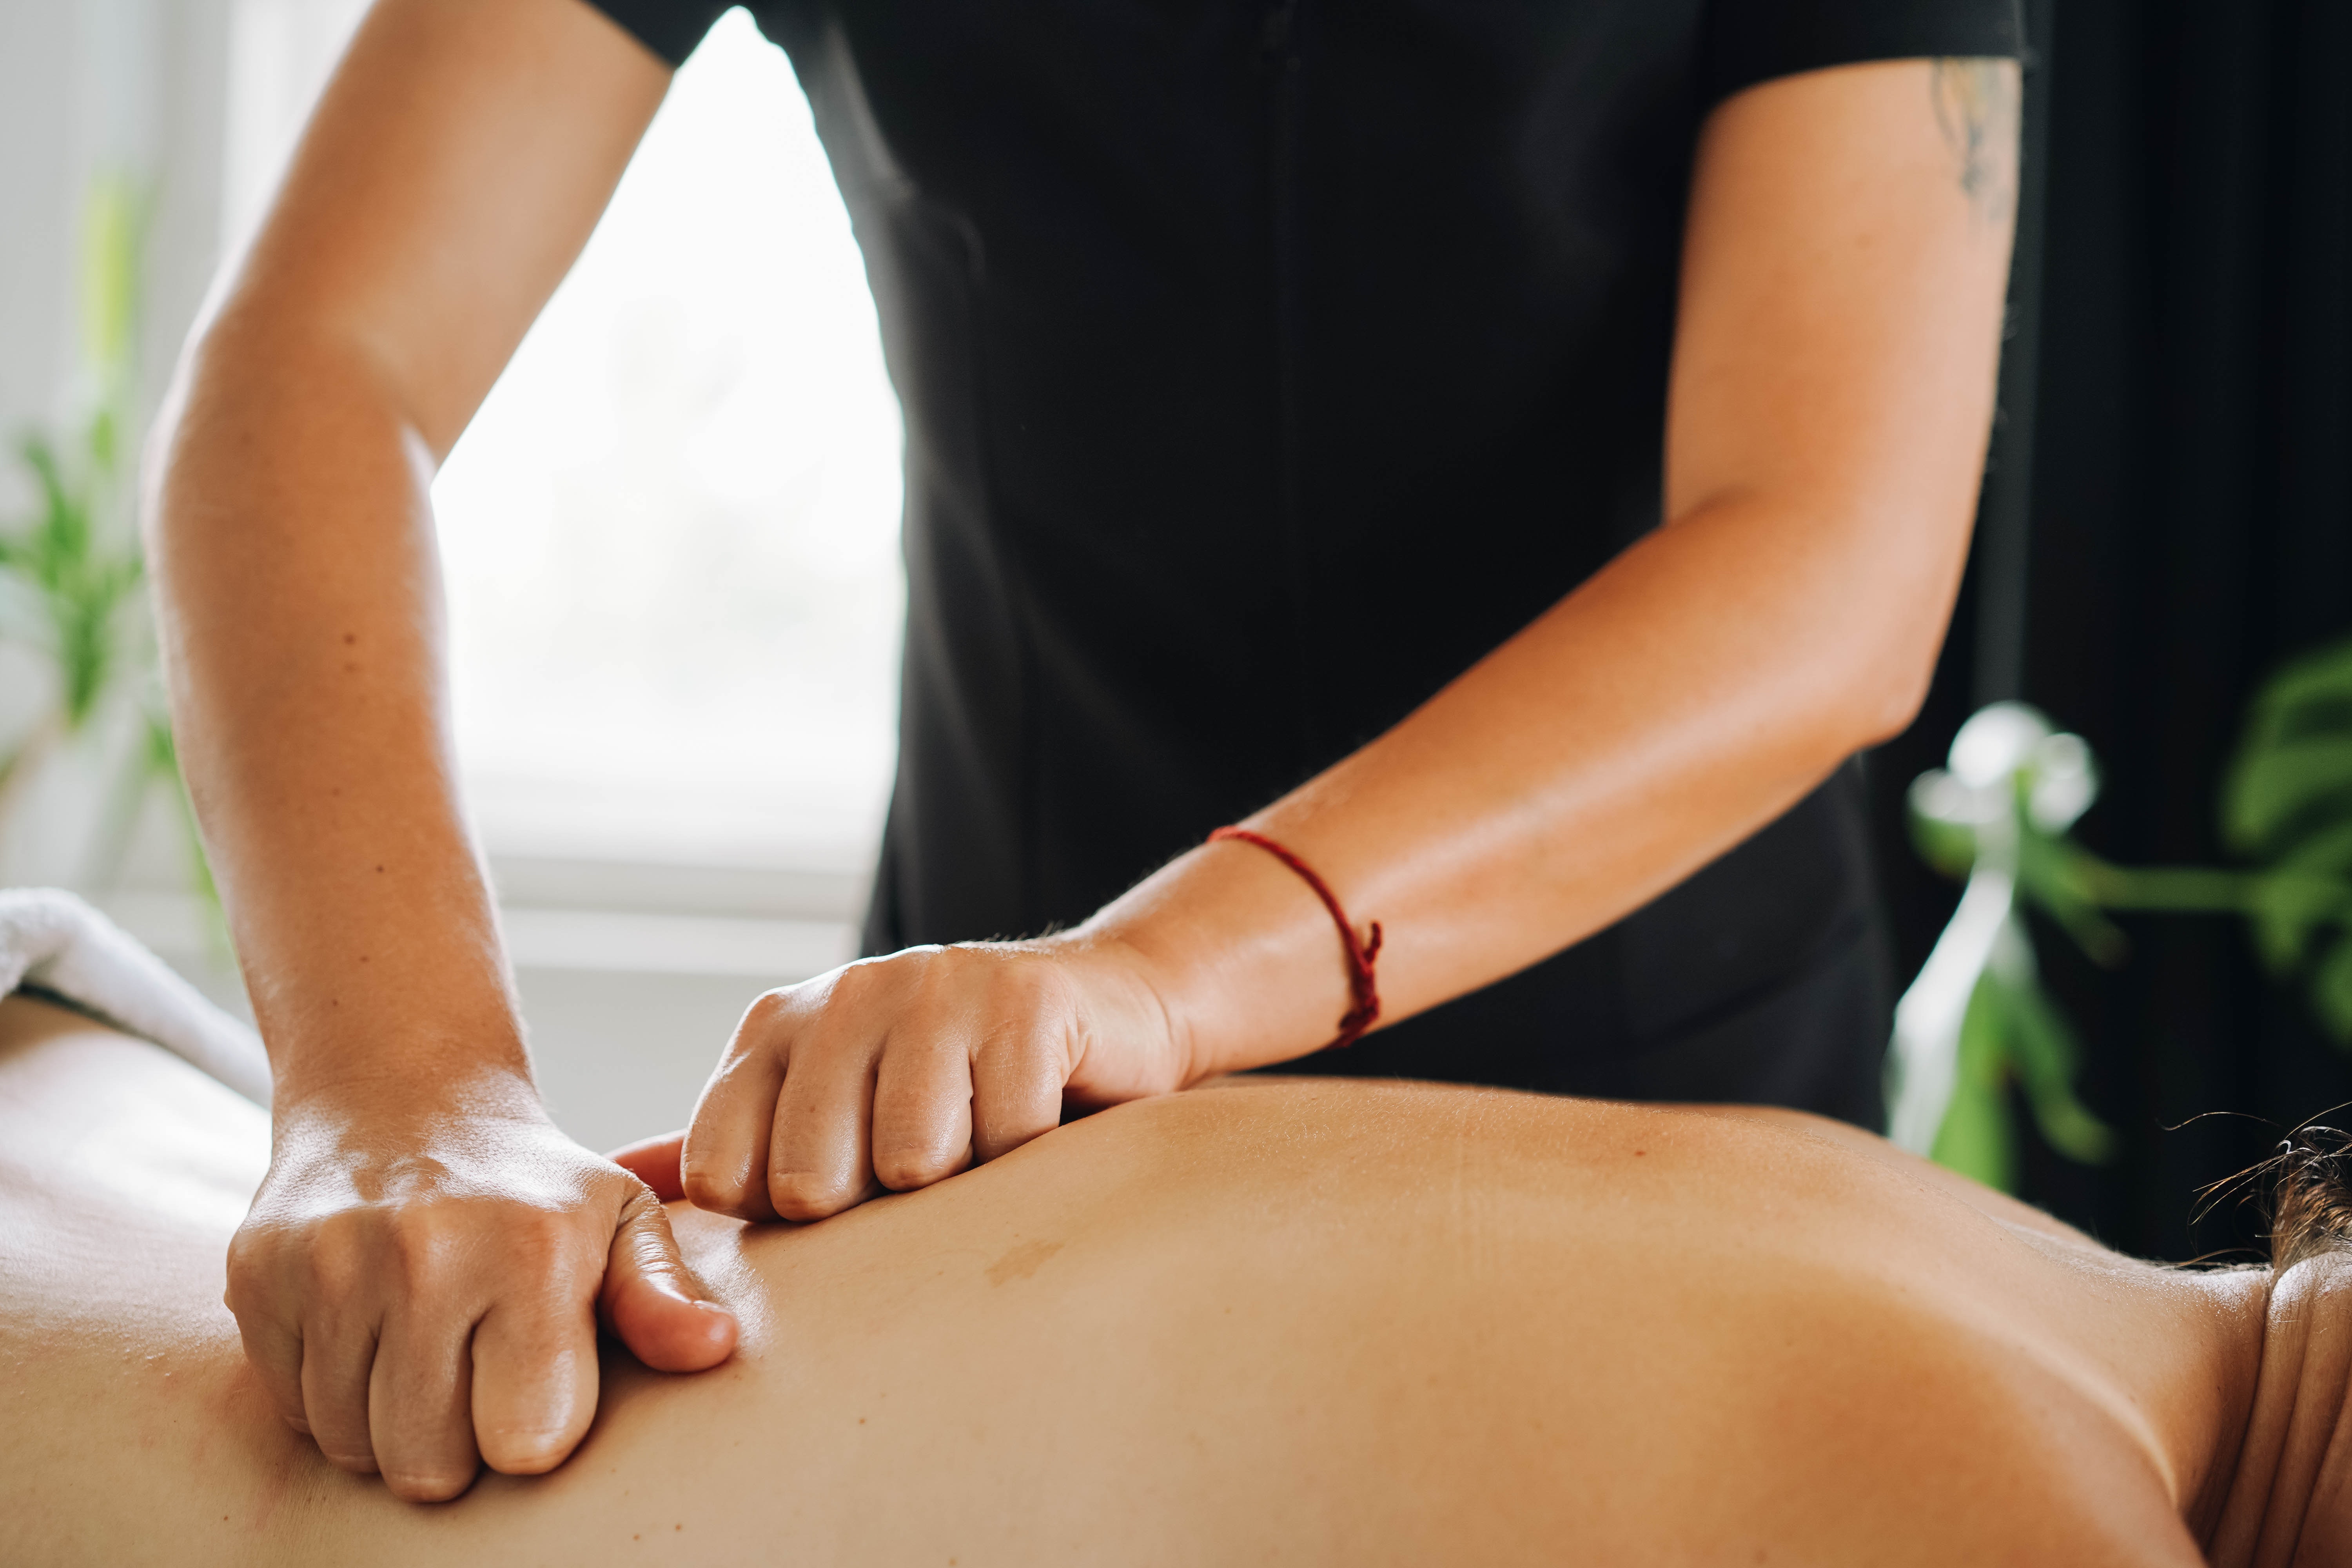 meilleur moment pour un massage du dos pour maximiser les bienfaits avec marjolie pause